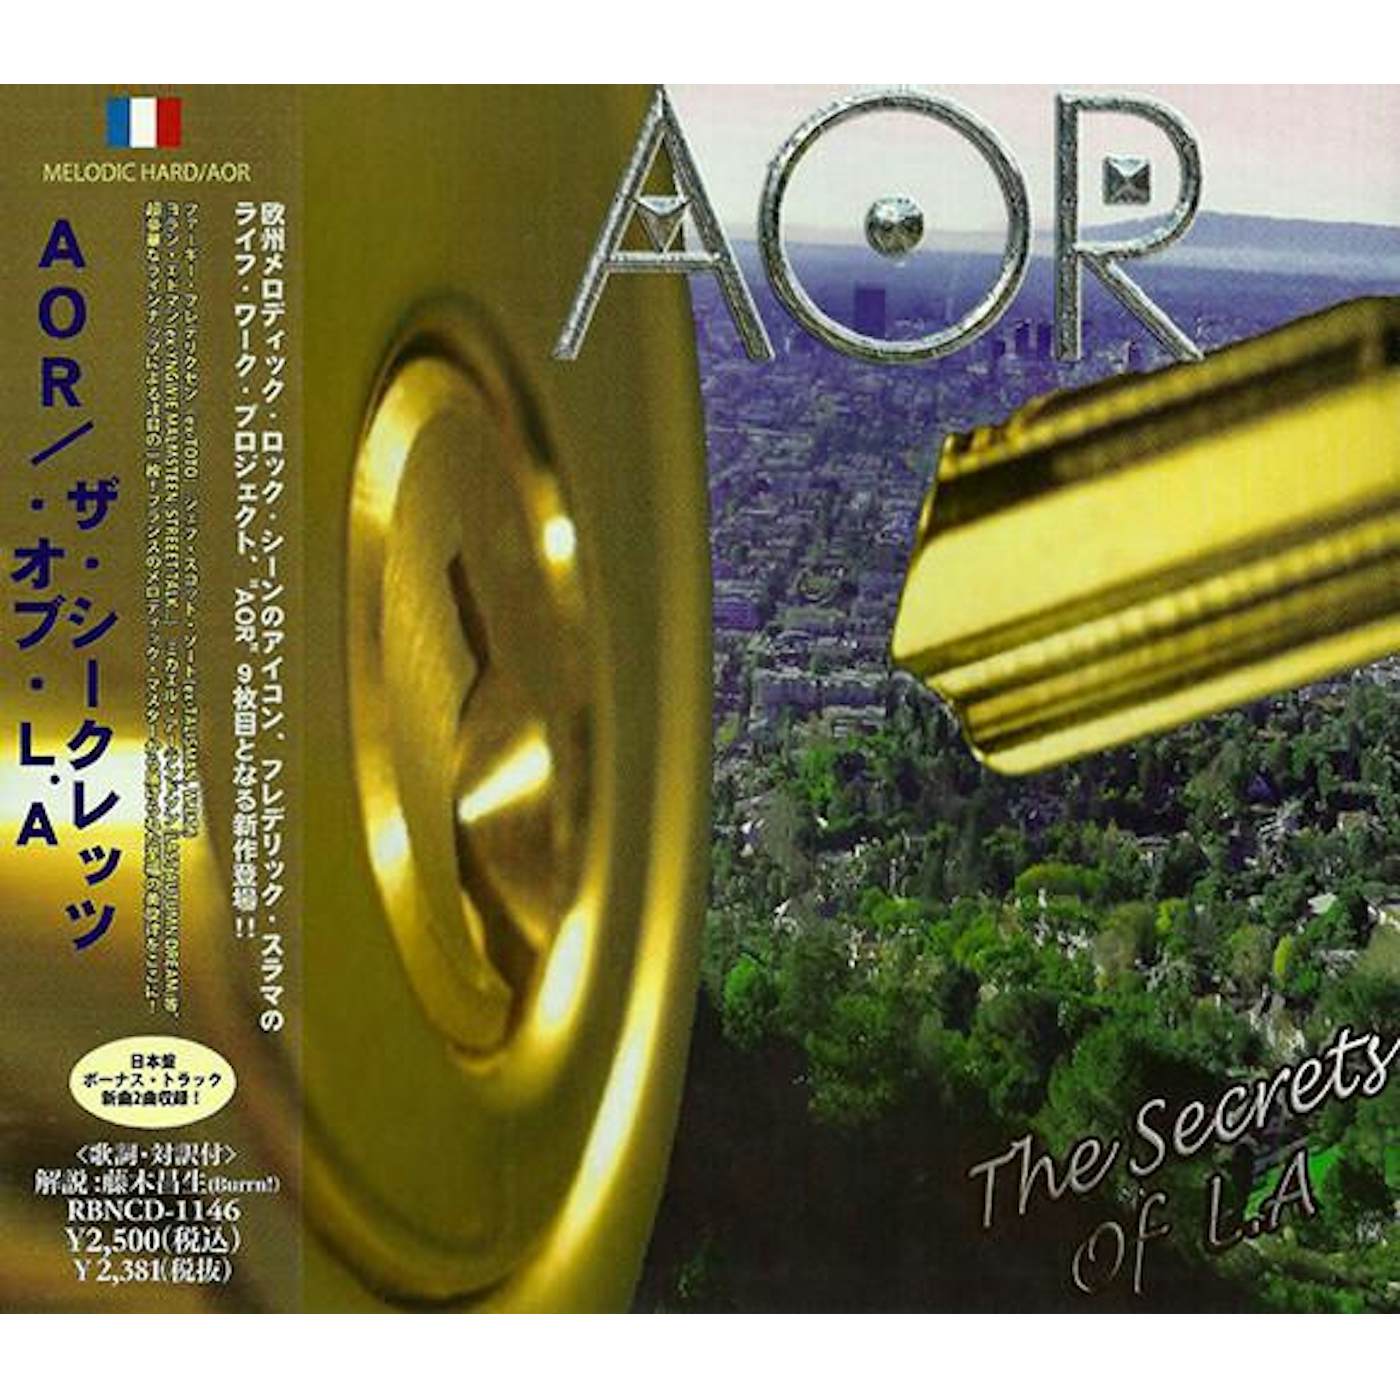 AOR Secrets of L.A. CD